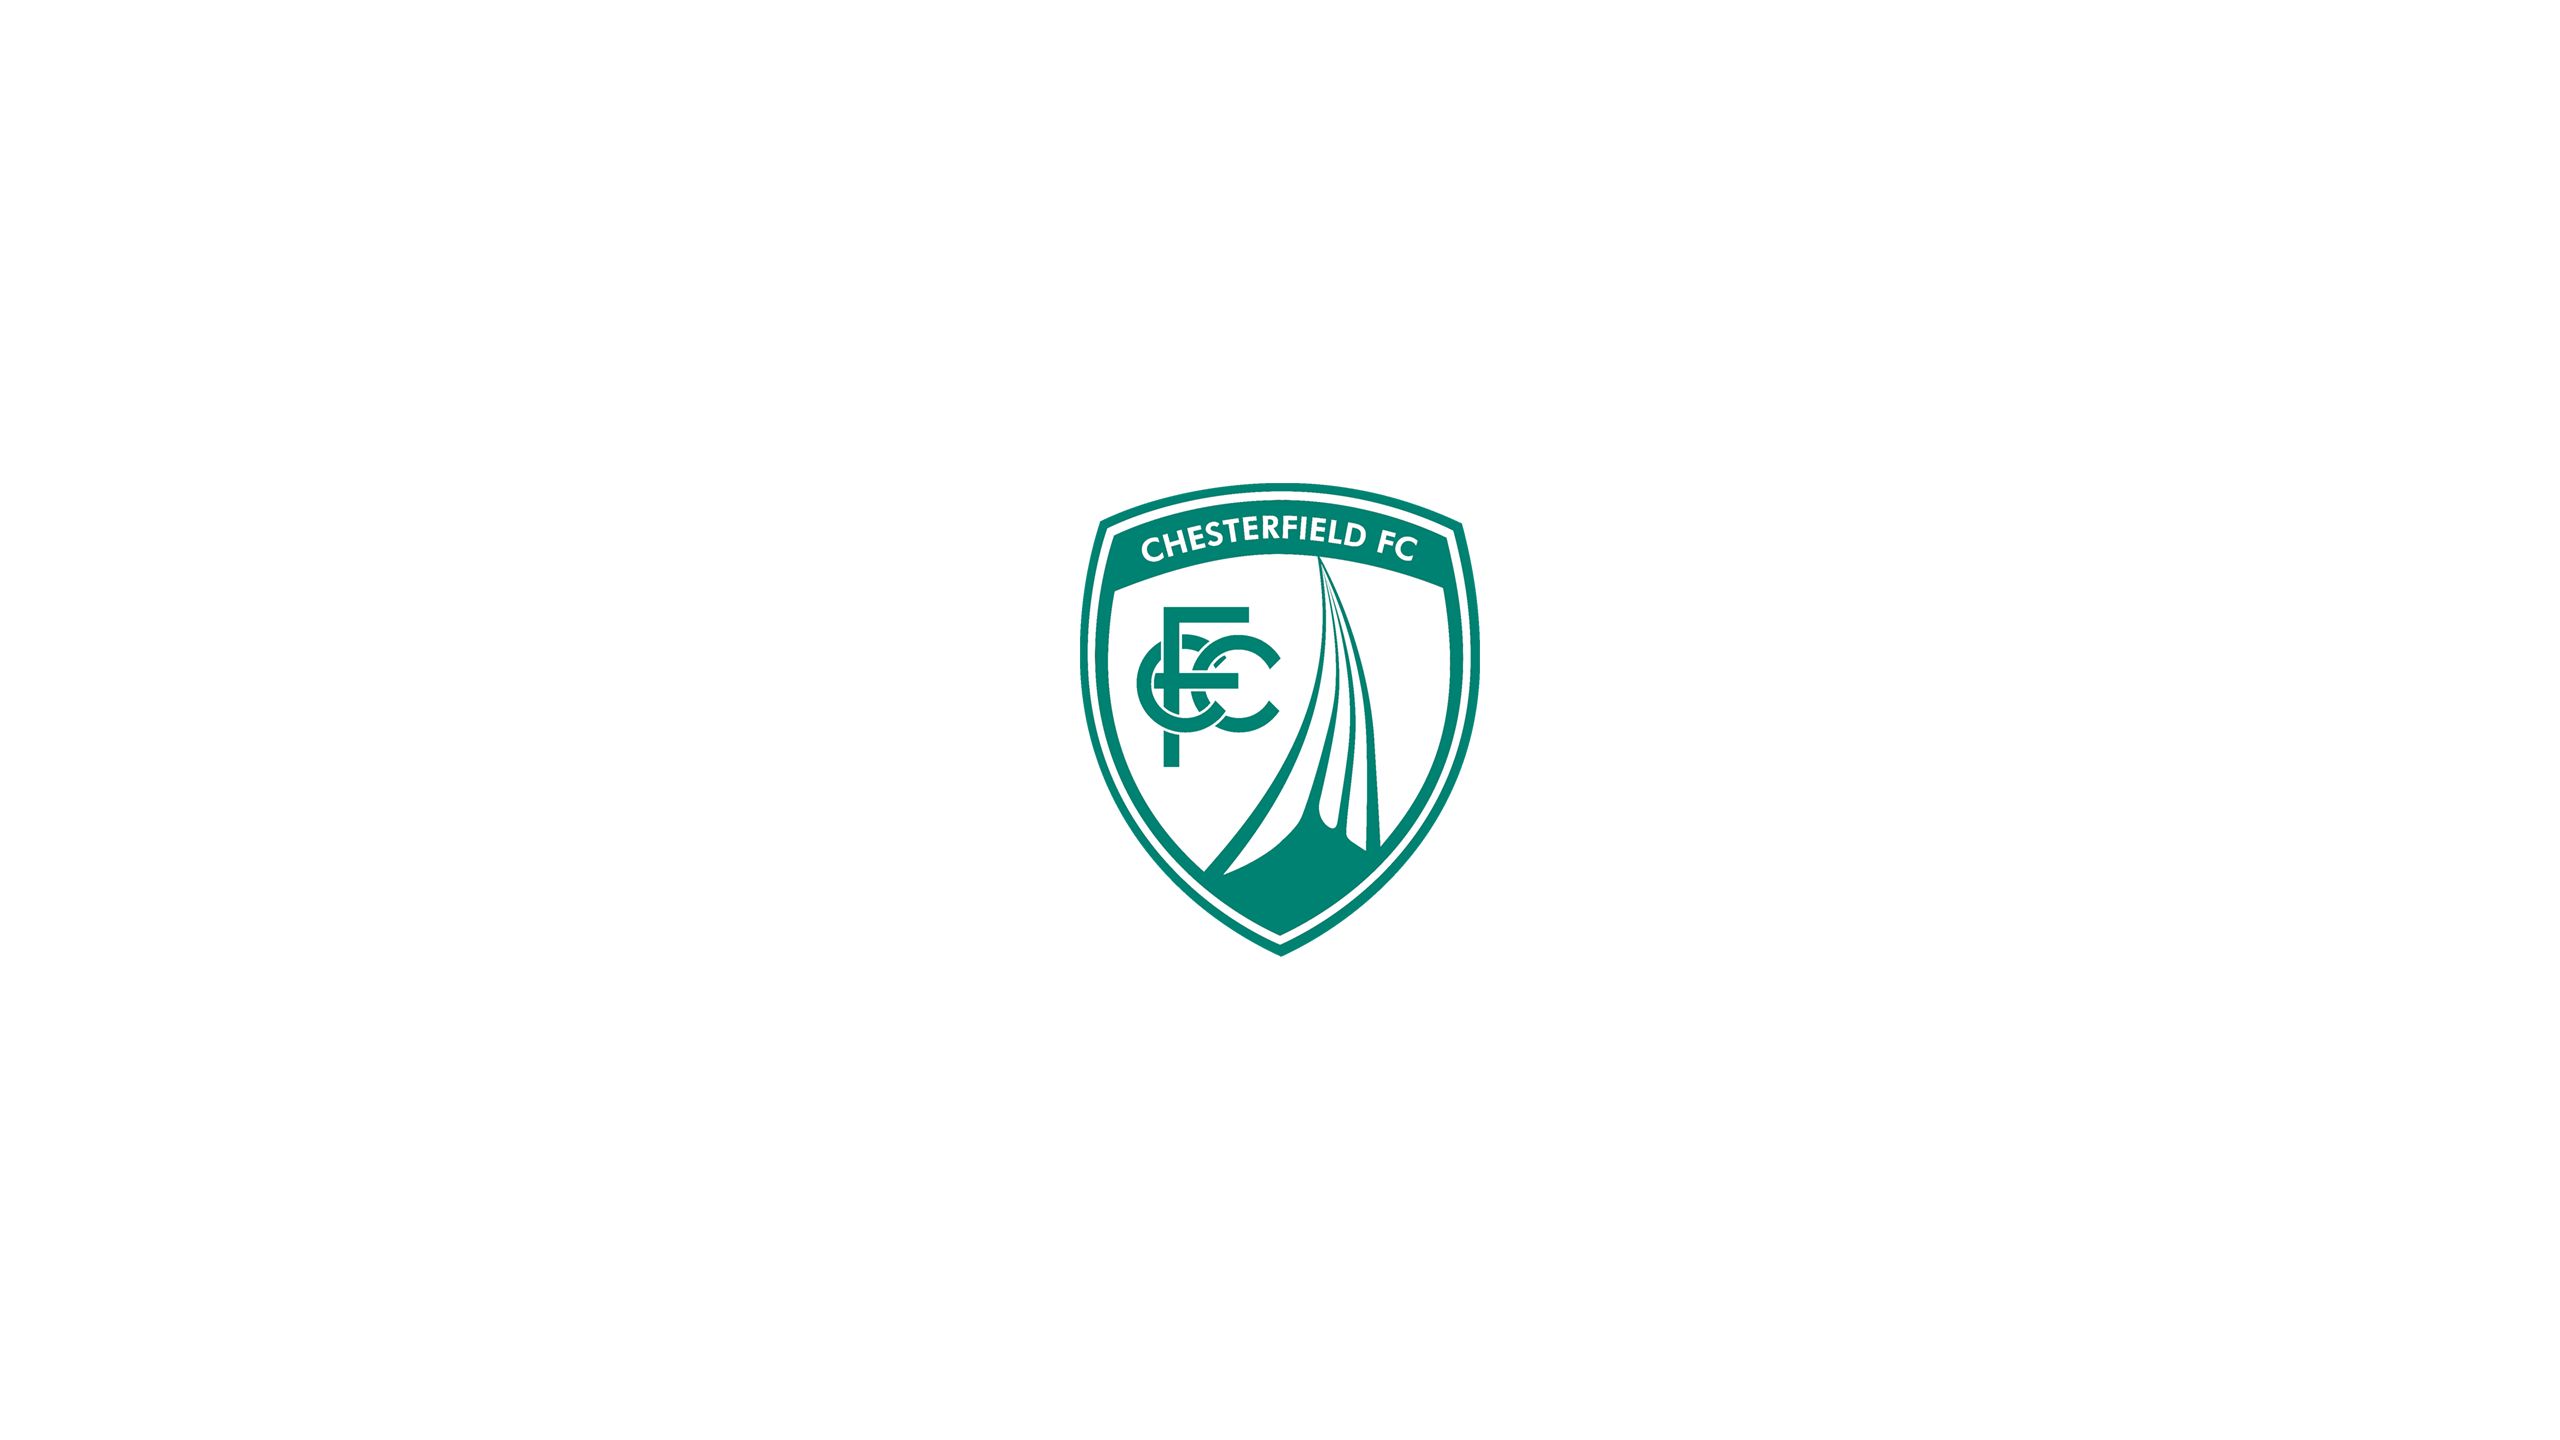 Descarga gratuita de fondo de pantalla para móvil de Fútbol, Logo, Emblema, Deporte, Chesterfield Fc.